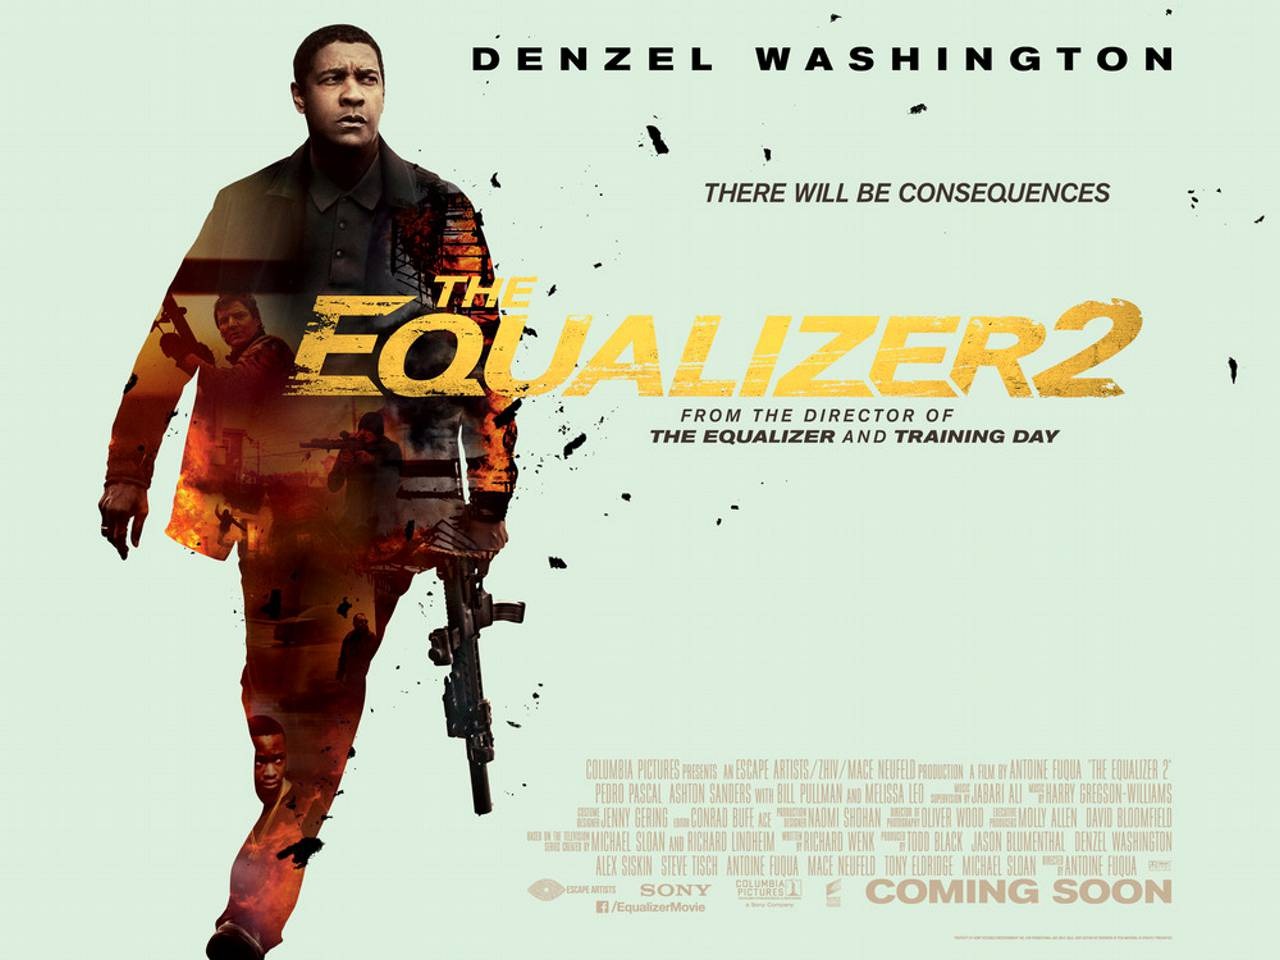 The Equalizer 2 starring Denzel Washington